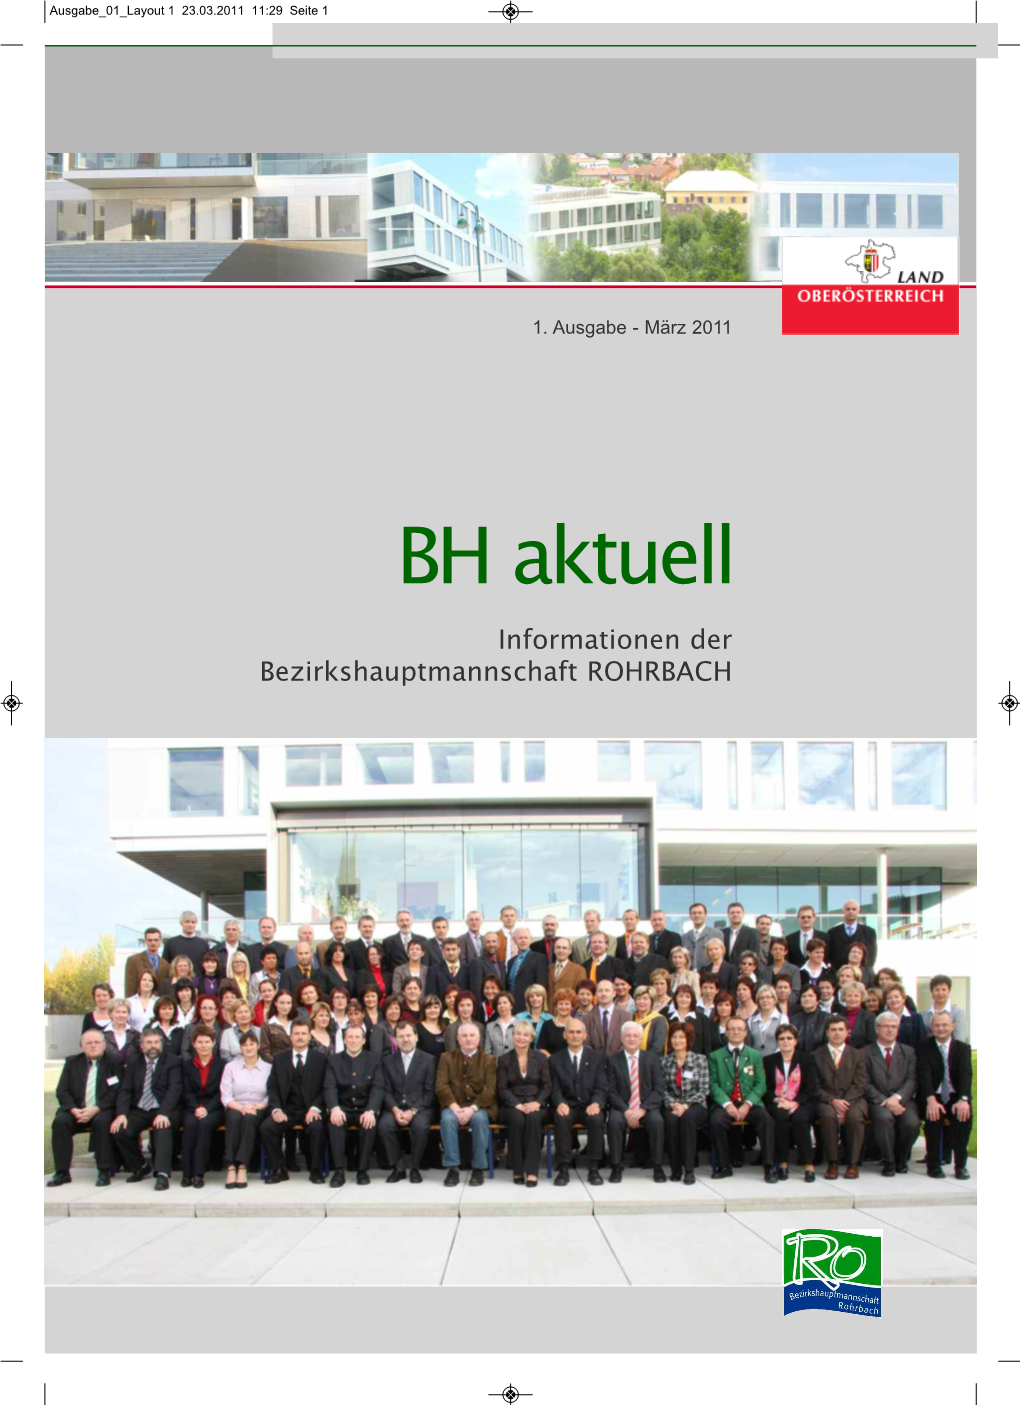 BH Aktuell Informationen Der Bezirkshauptmannschaft ROHRBACH Ausgabe 01 Layout 1 23.03.2011 11:29 Seite 2